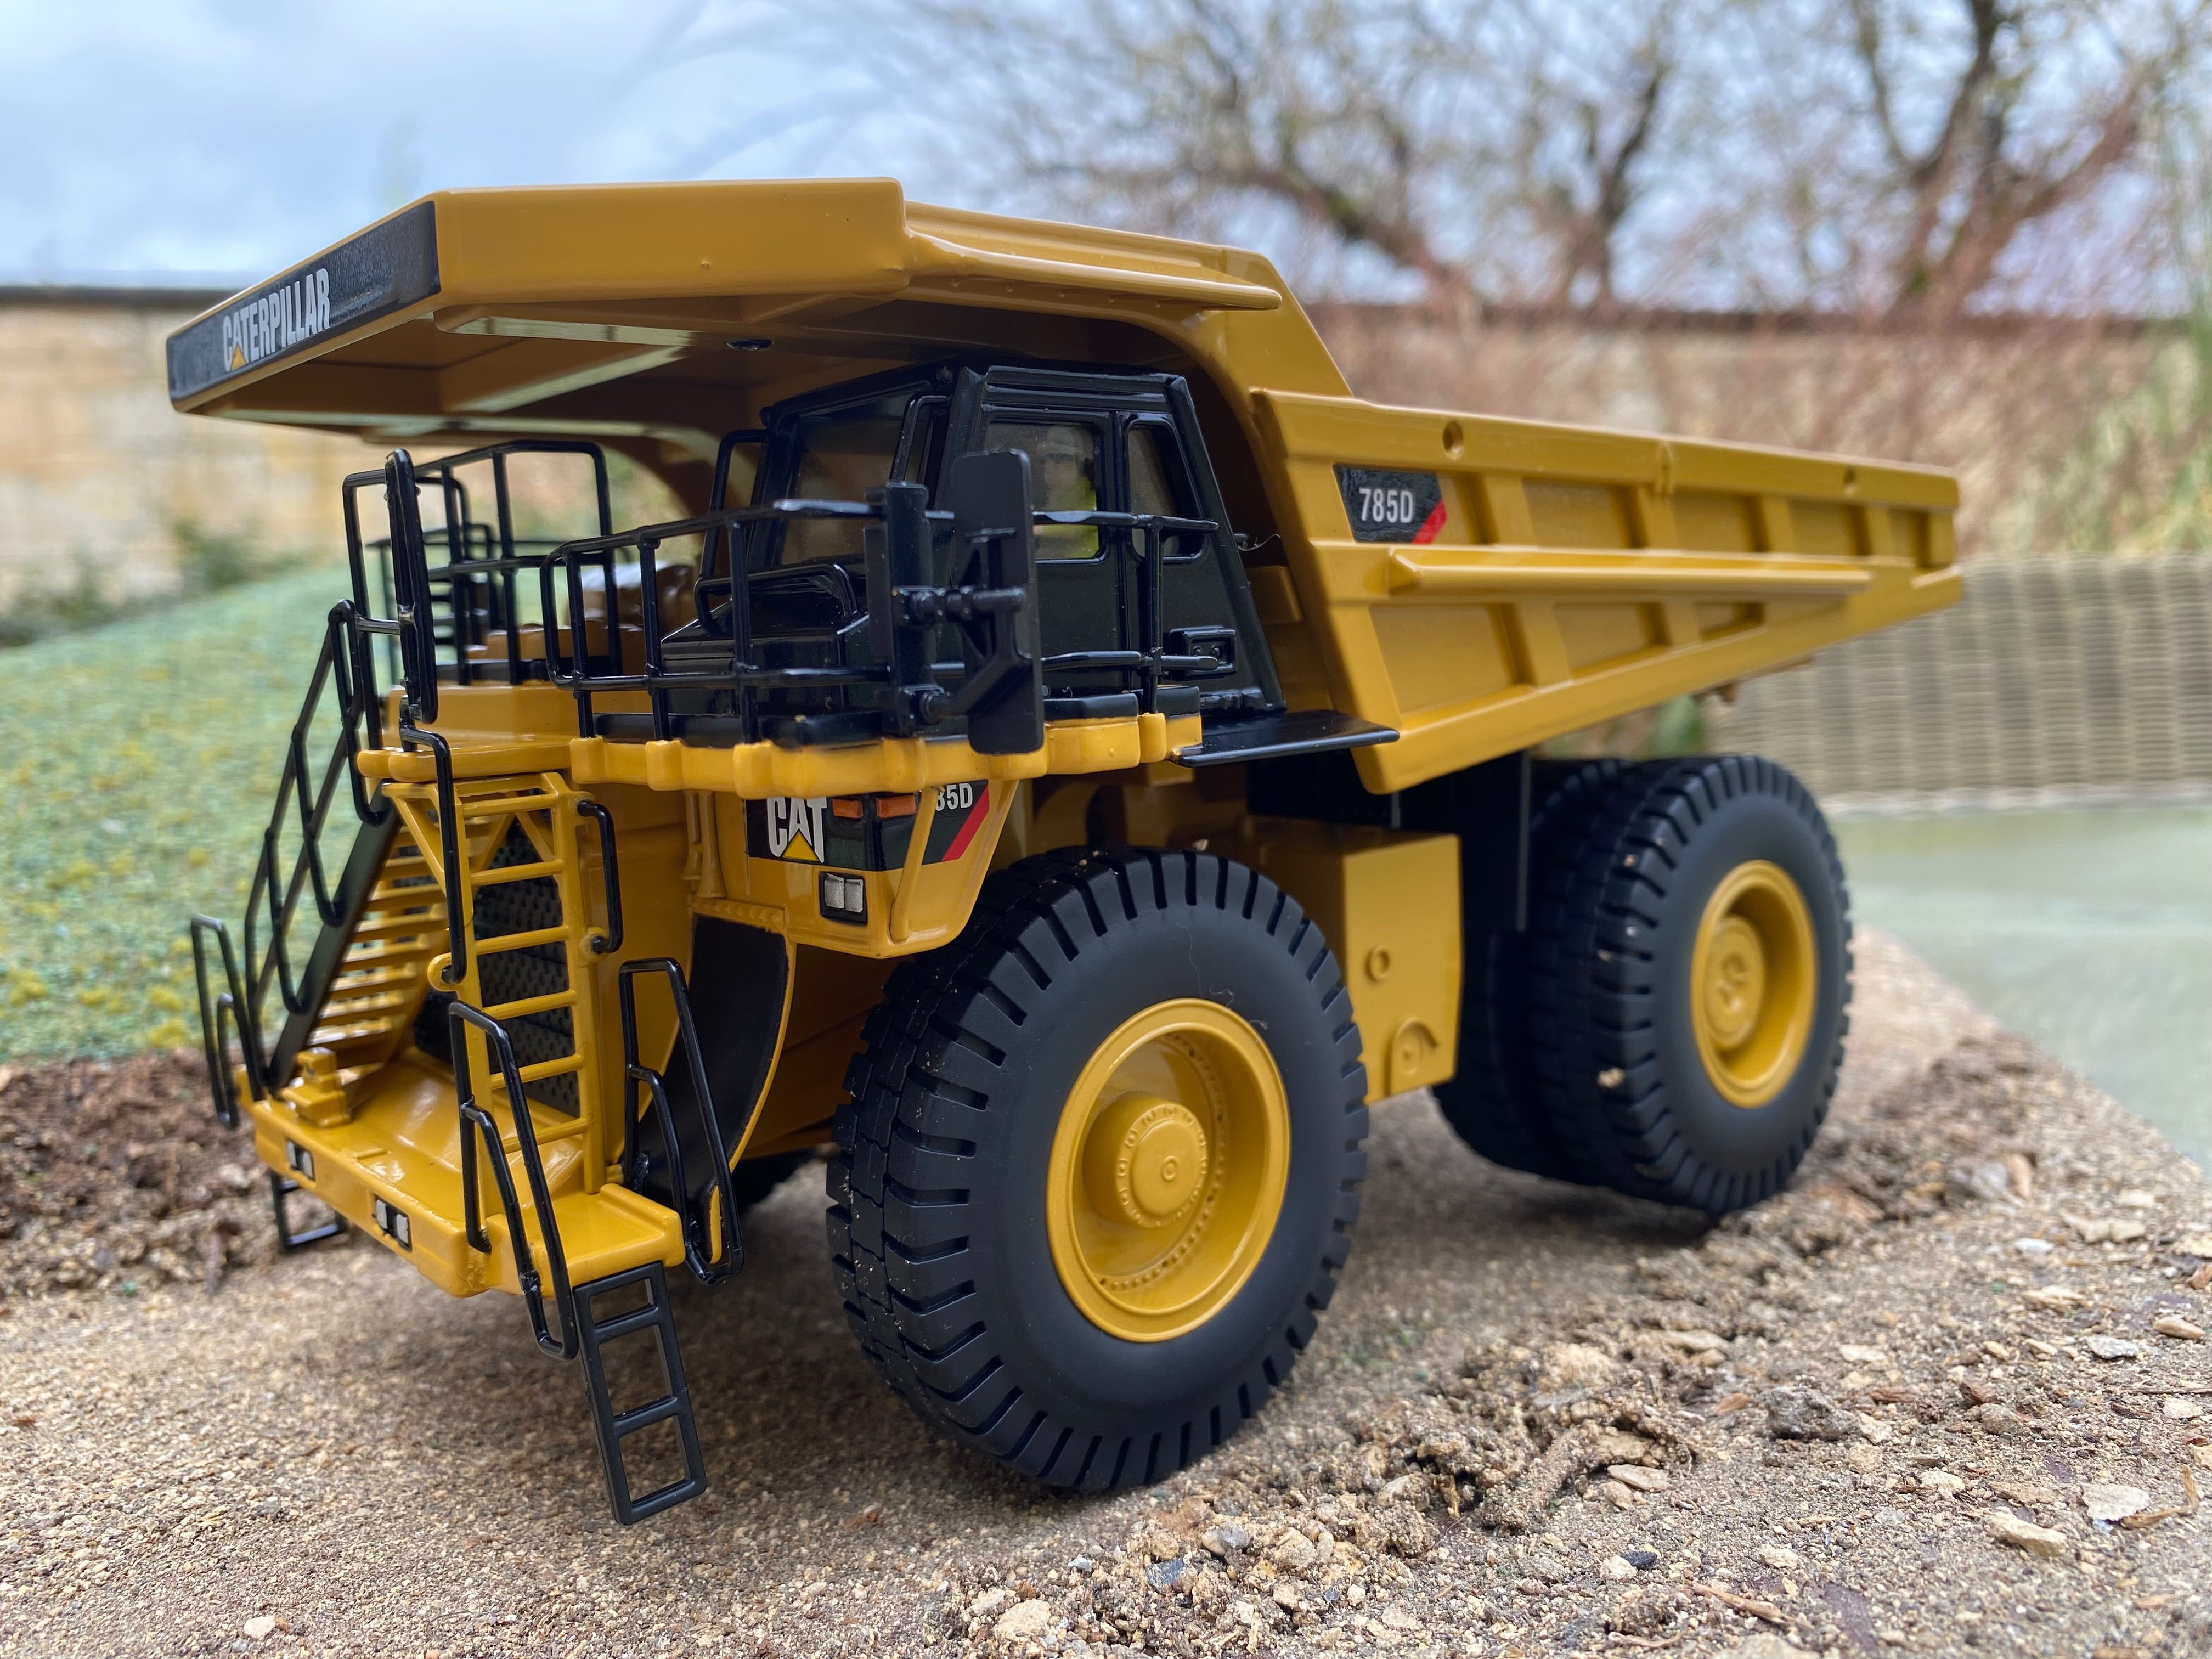 CAT 785D Mining Truck. Scale 1:50